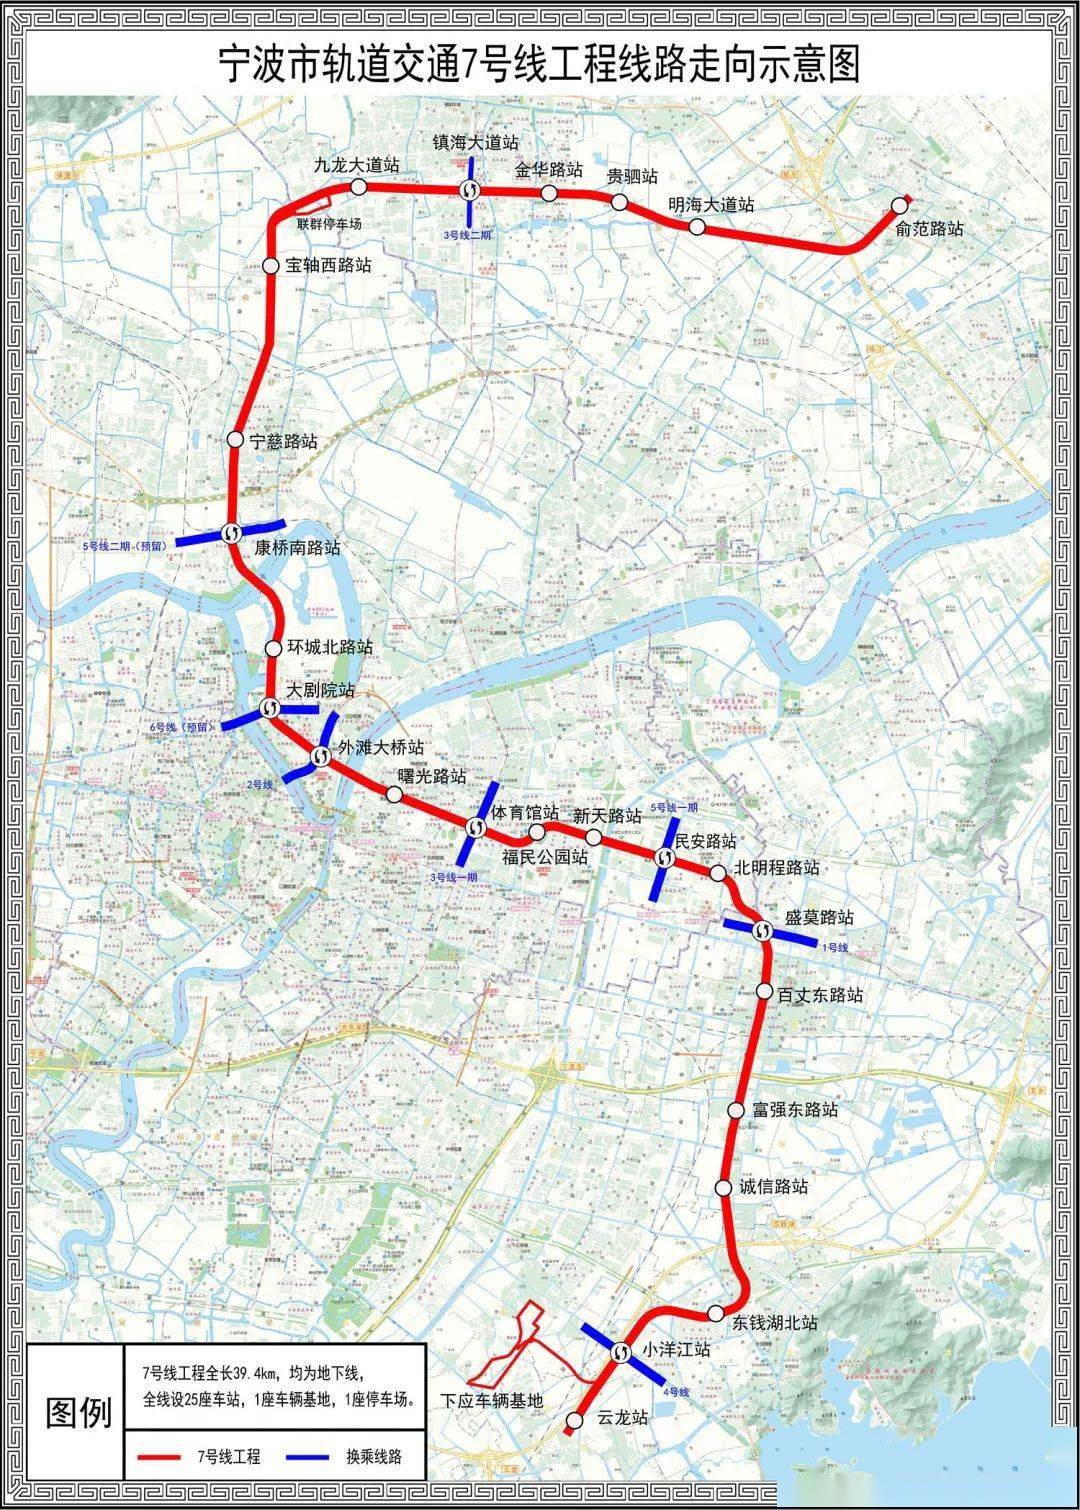 宁波轨交三期进展:地铁7号线,8号线一期选址公示